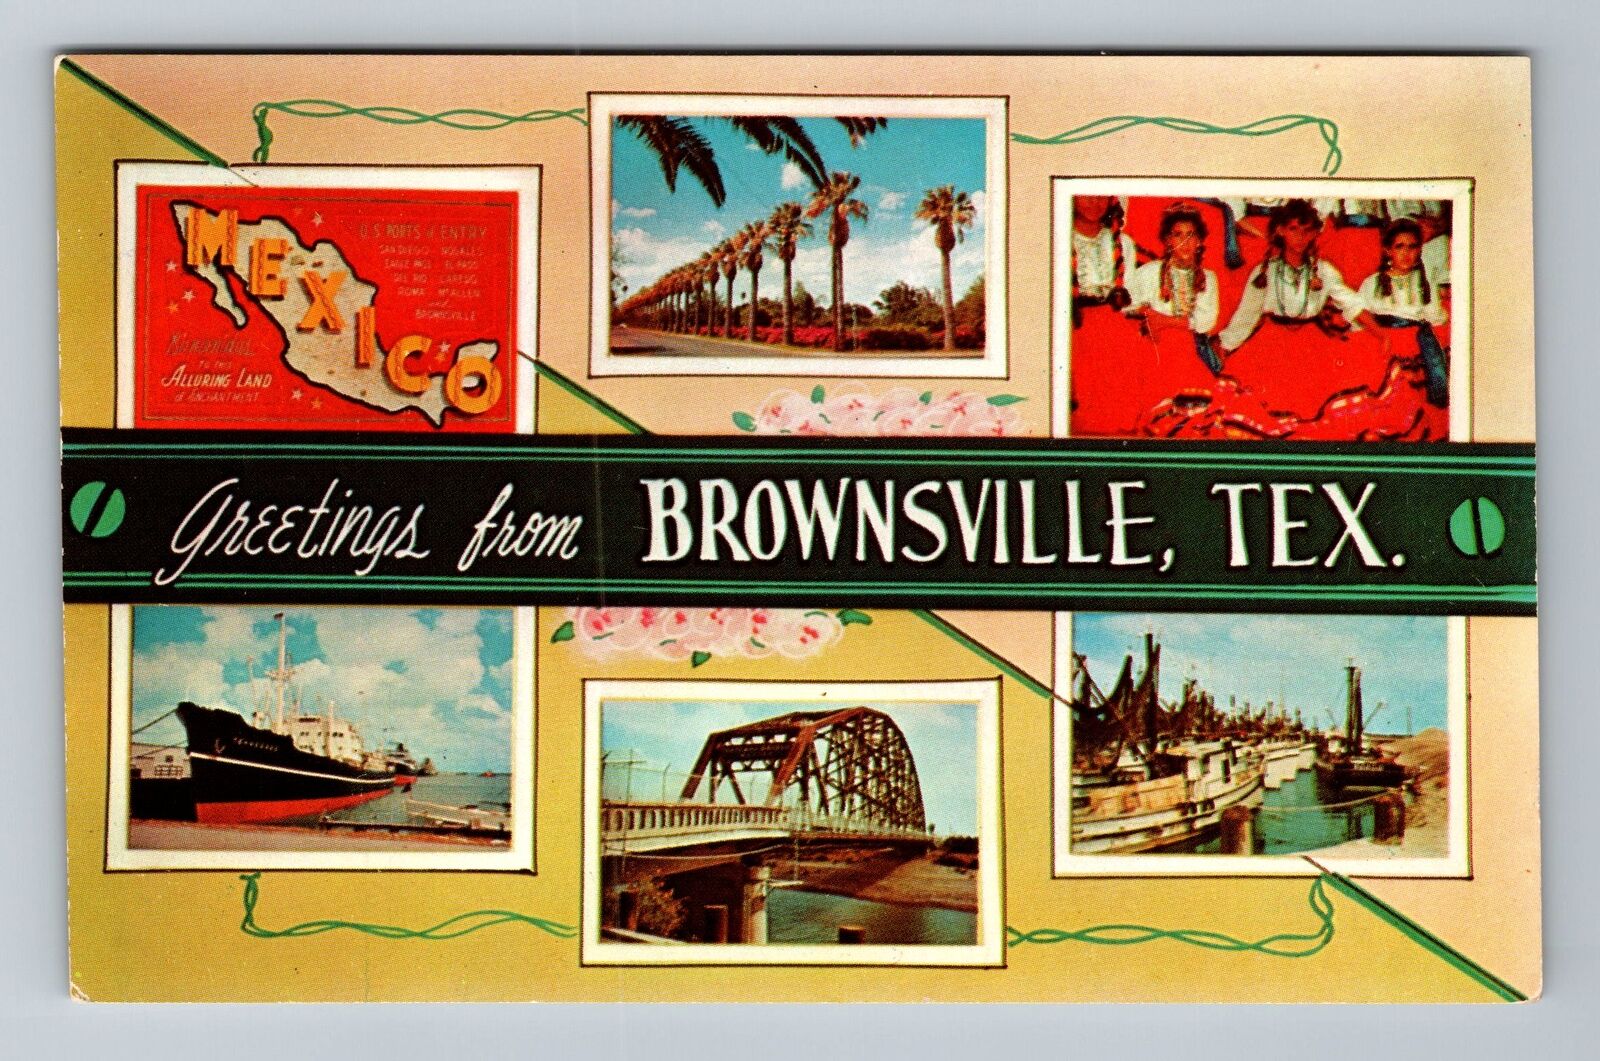 Brownsville TX-Texas, General Banner Greetings, Landmarks, Vintage Postcard